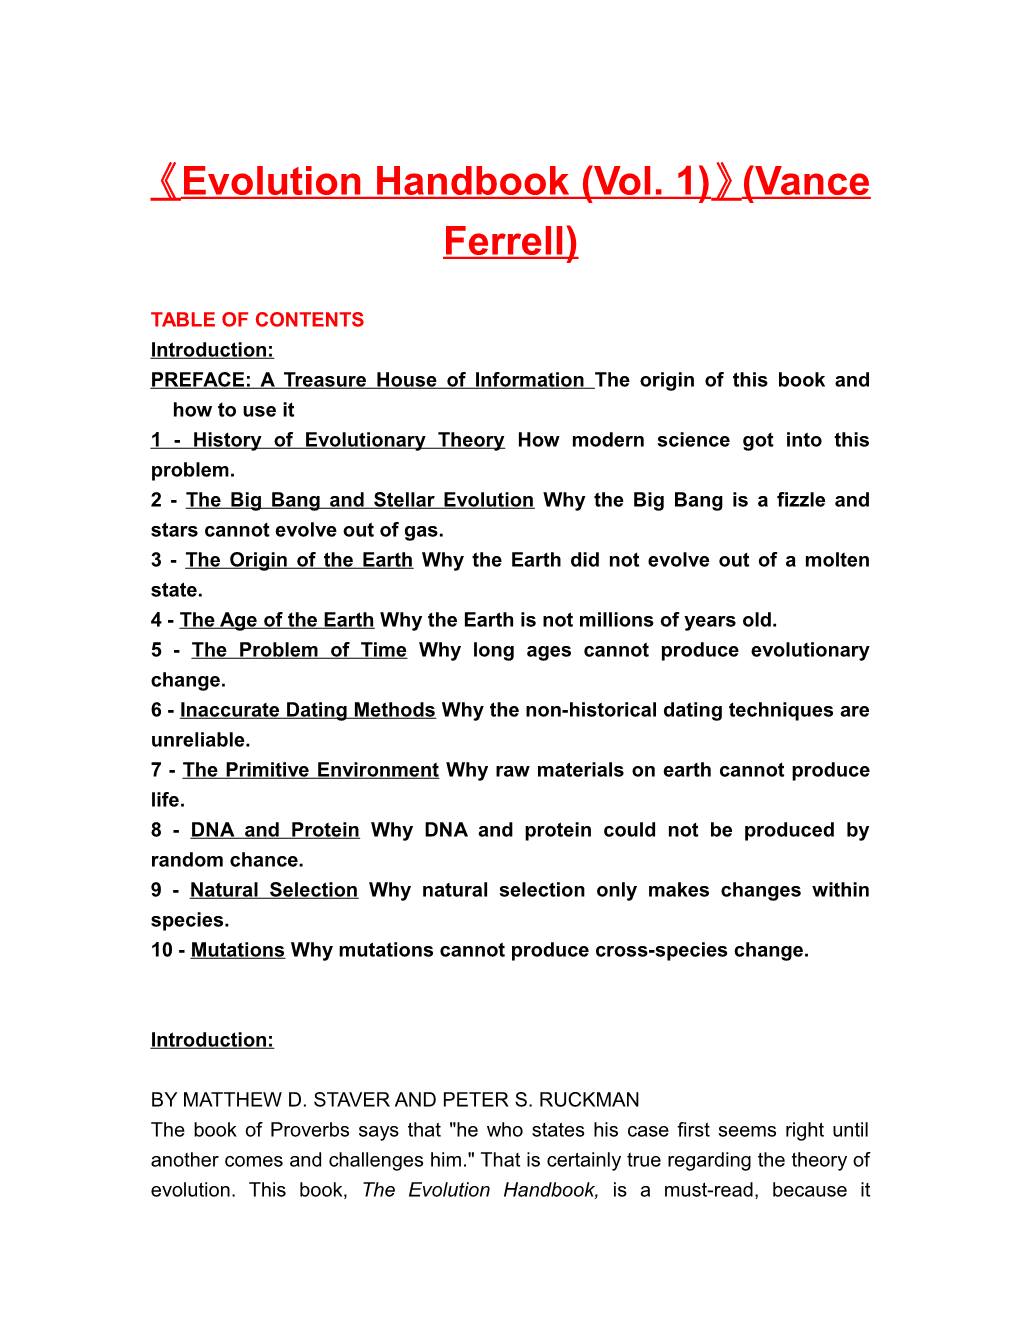 Evolution Handbook (Vol. 1) (Vance Ferrell)